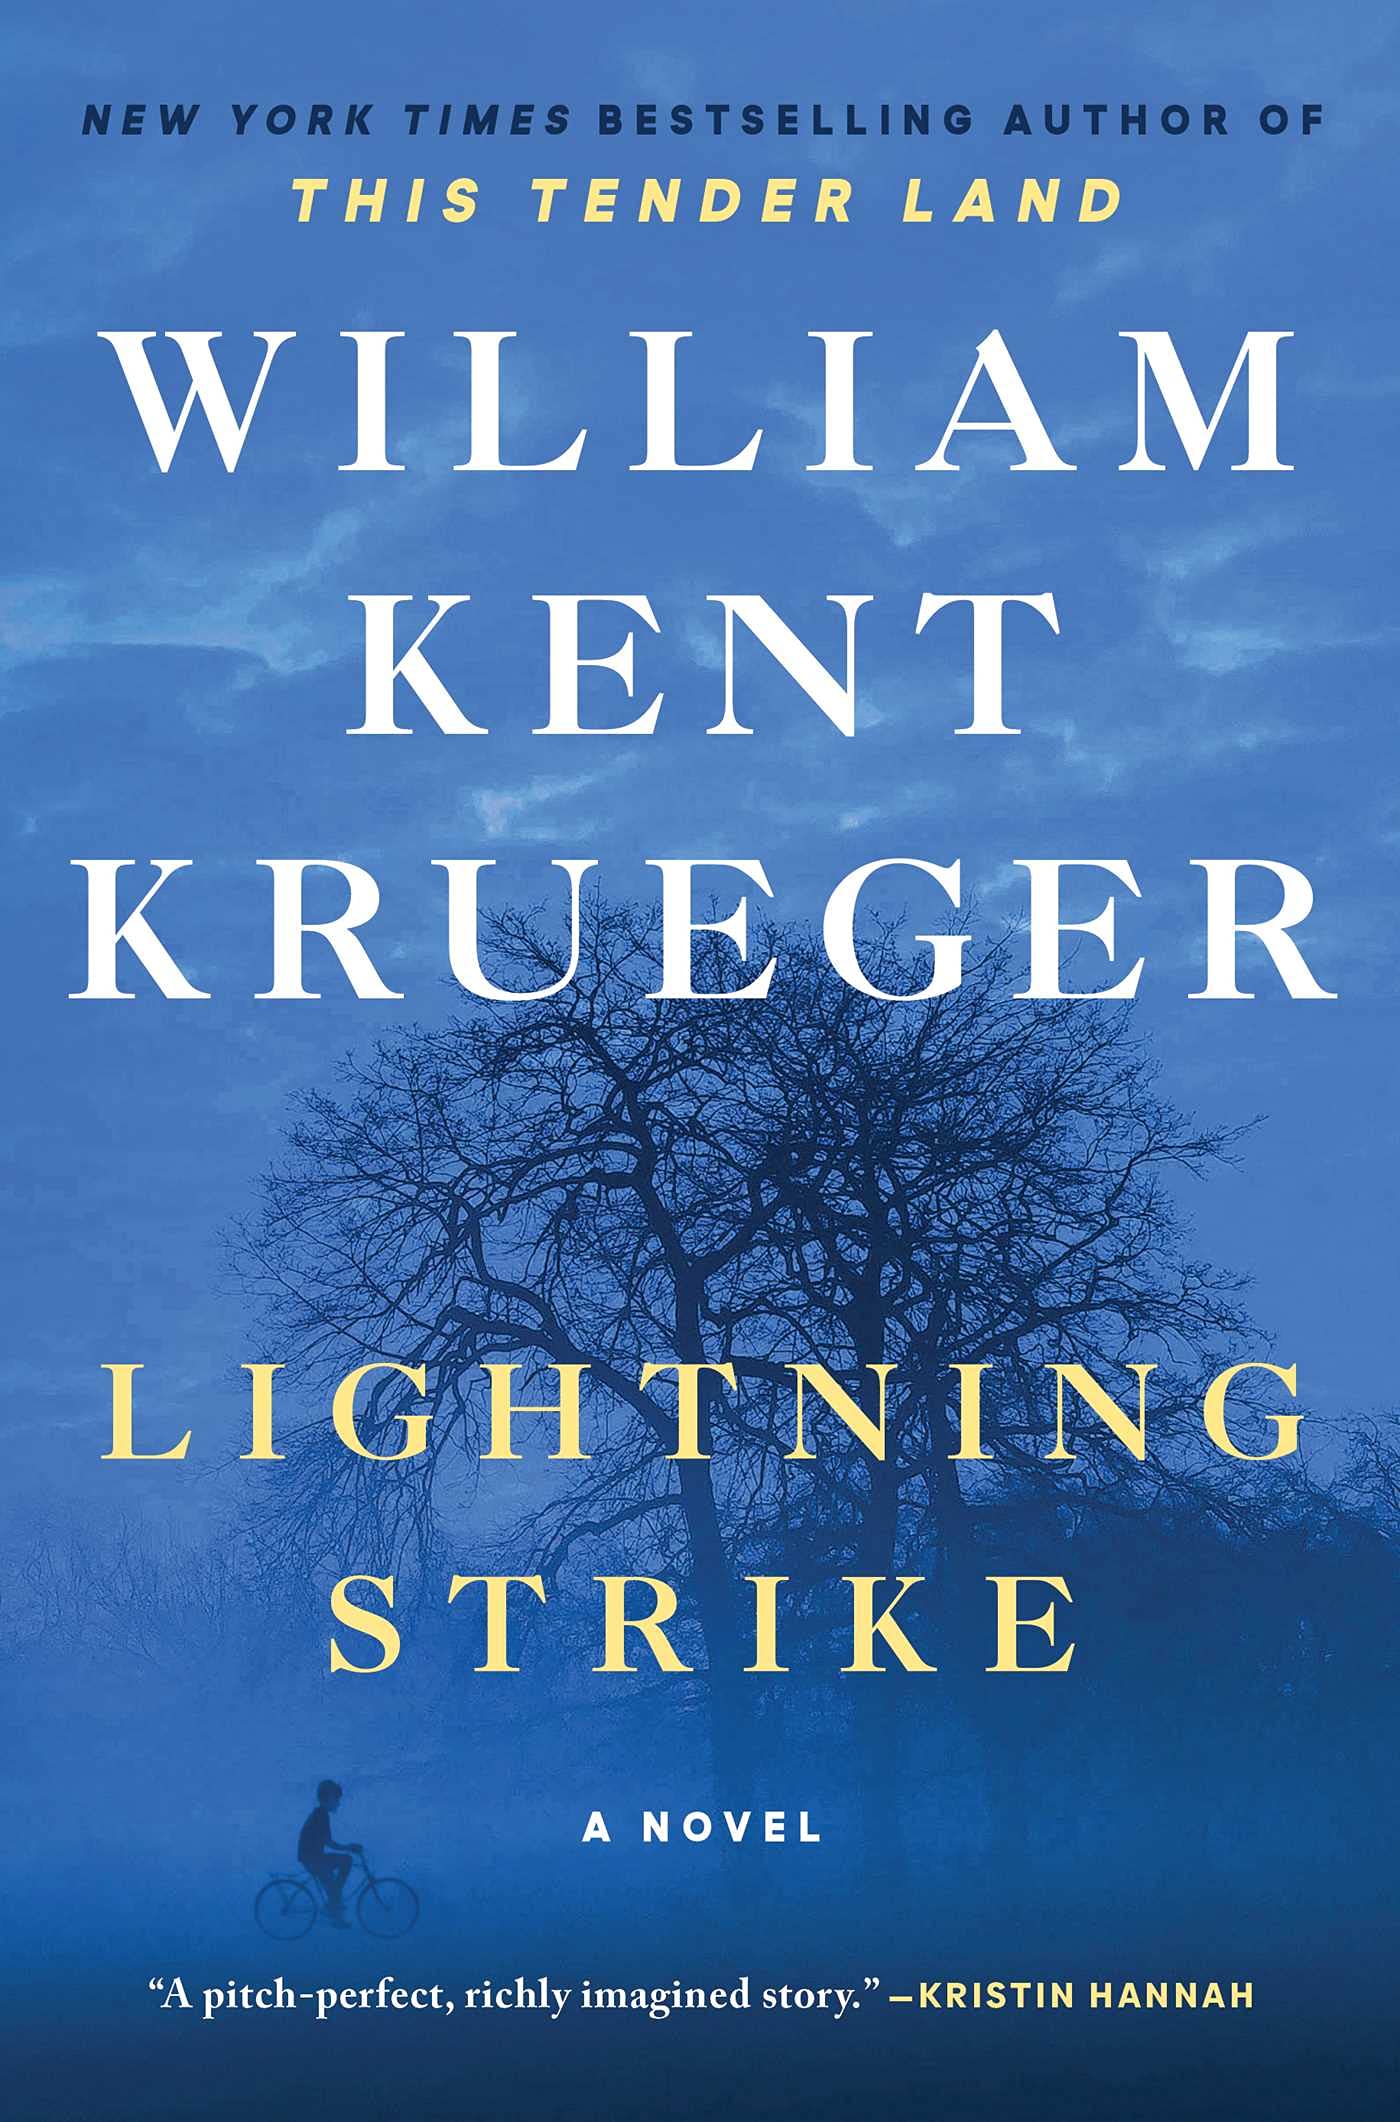 “Lightning Strike” by William Kent Krueger